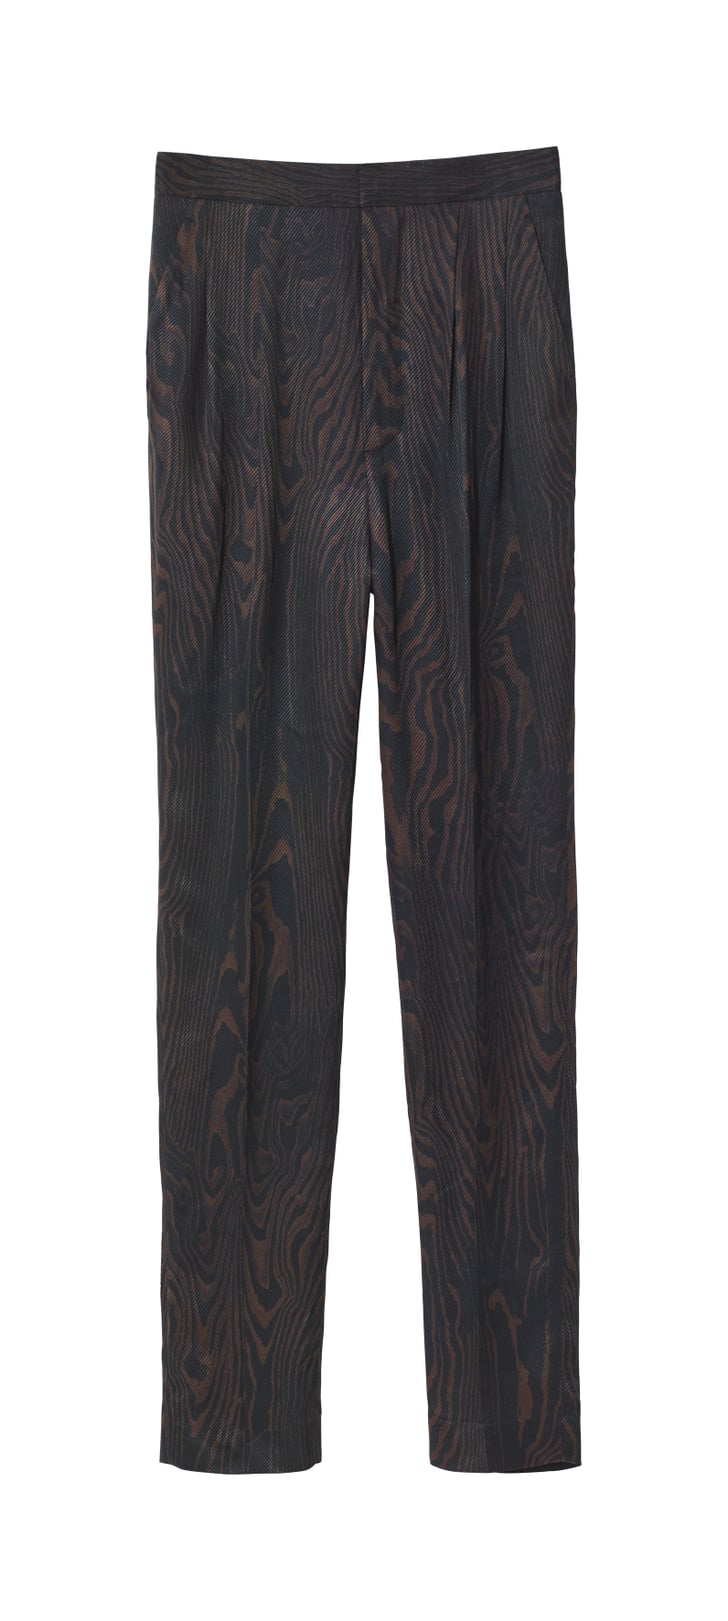 H&M Patterned Suit Pants | H&M Fall 2018 Studio Collection | POPSUGAR ...